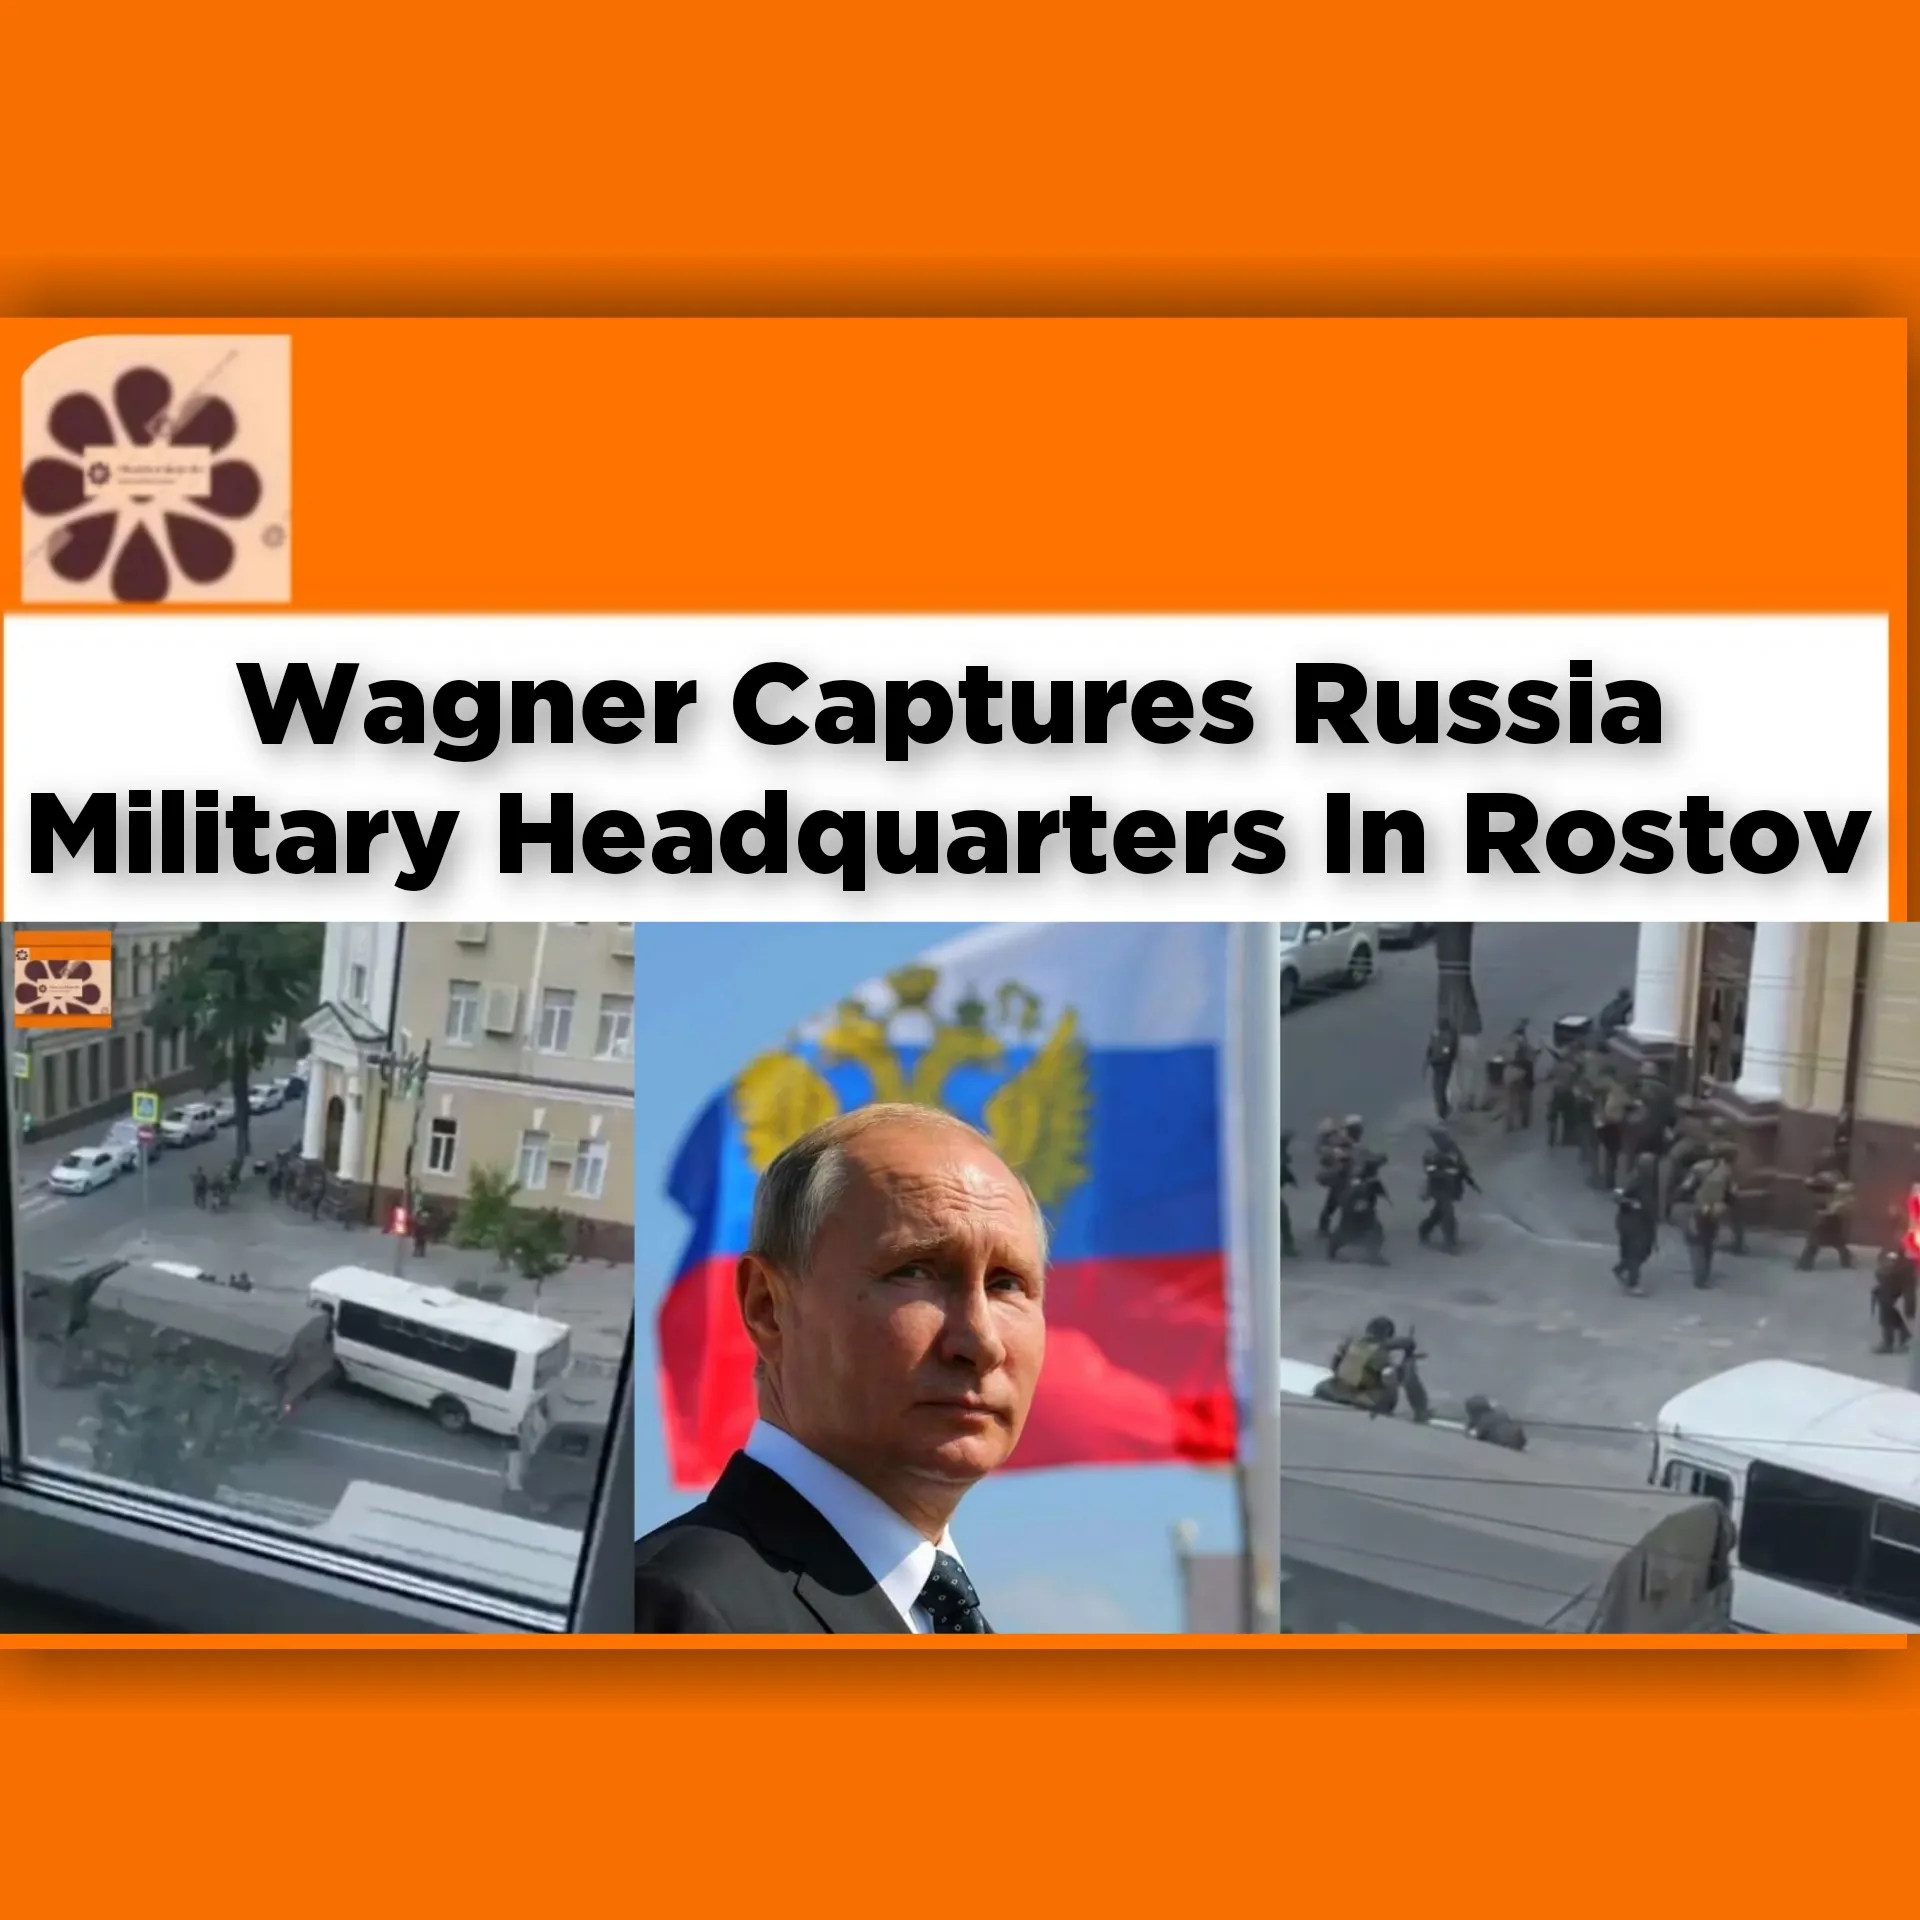 Wagner Captures Russia Military Headquarters In Rostov ~ OsazuwaAkonedo #Prigozhin #Putin #Rostov #Russia #Ukraine #Vladimir #Wagner #Yevgeny